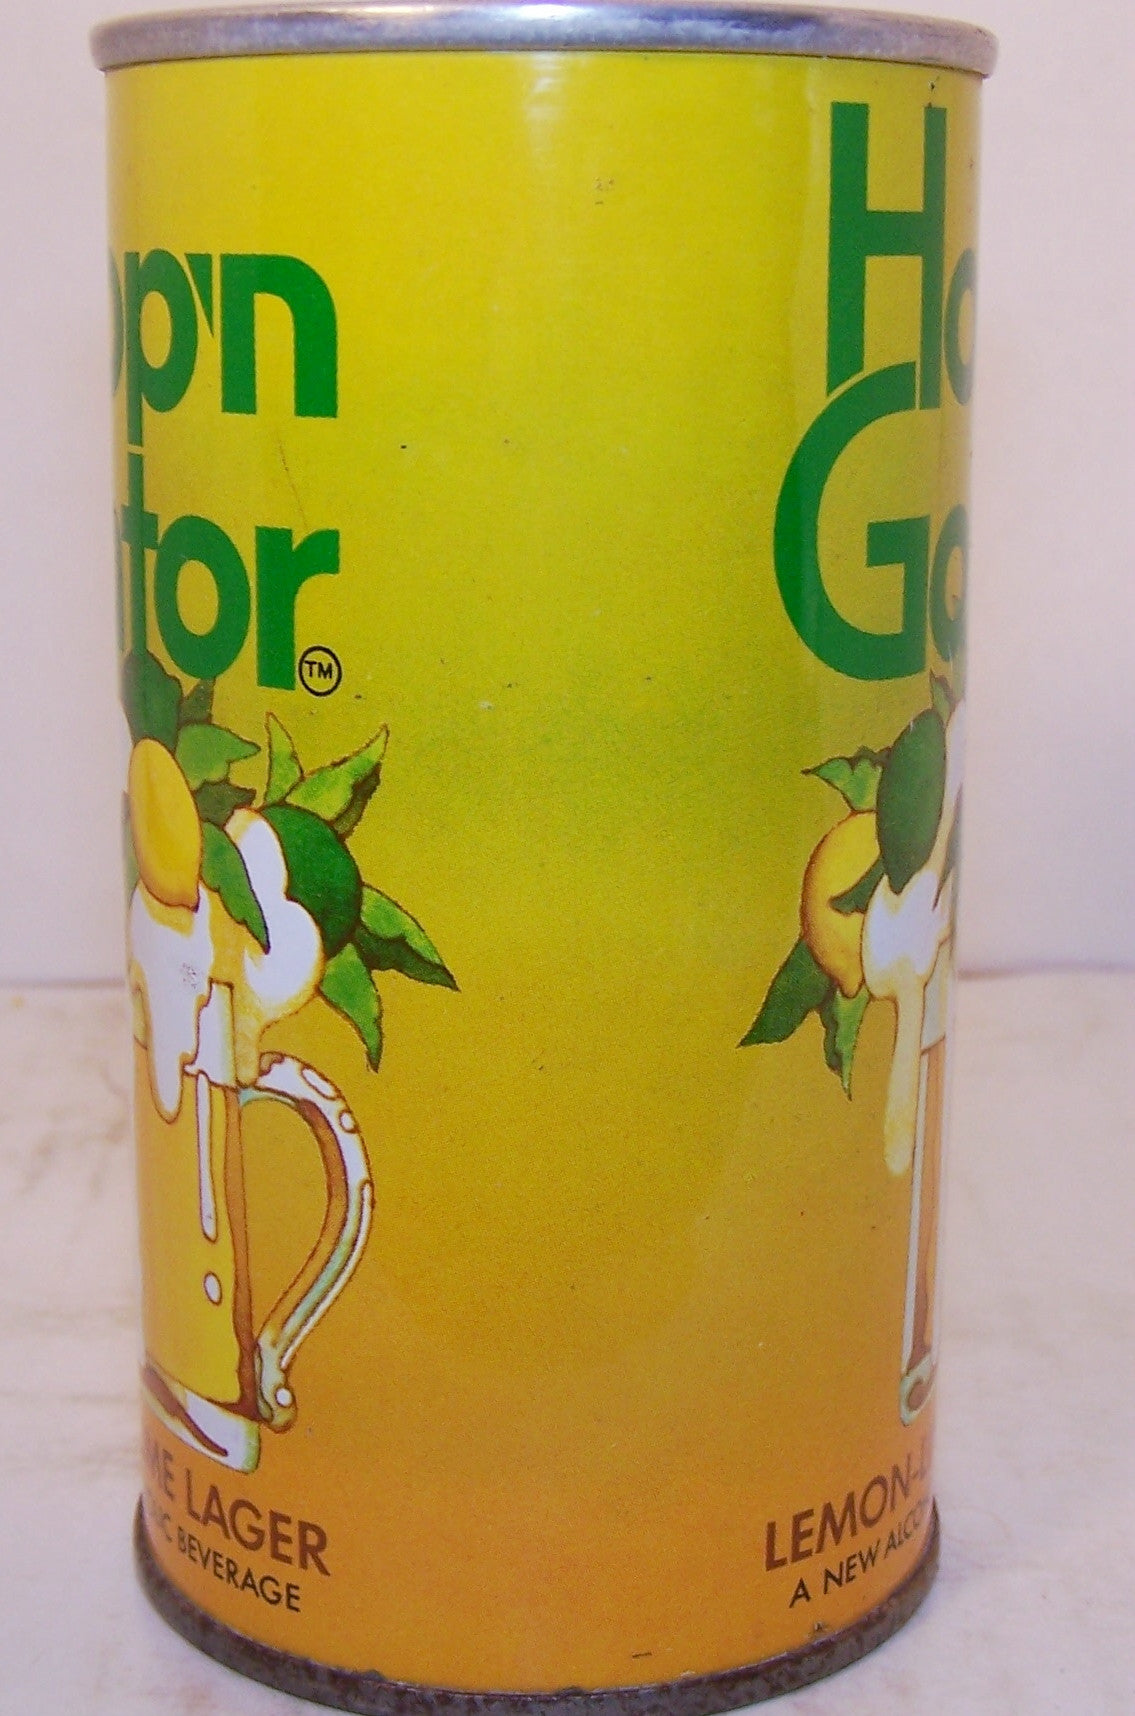 Hop'n Gator Lemon-Lime Lager, USBC II 77-13, grade 1/1+ Sold on 09/15/16